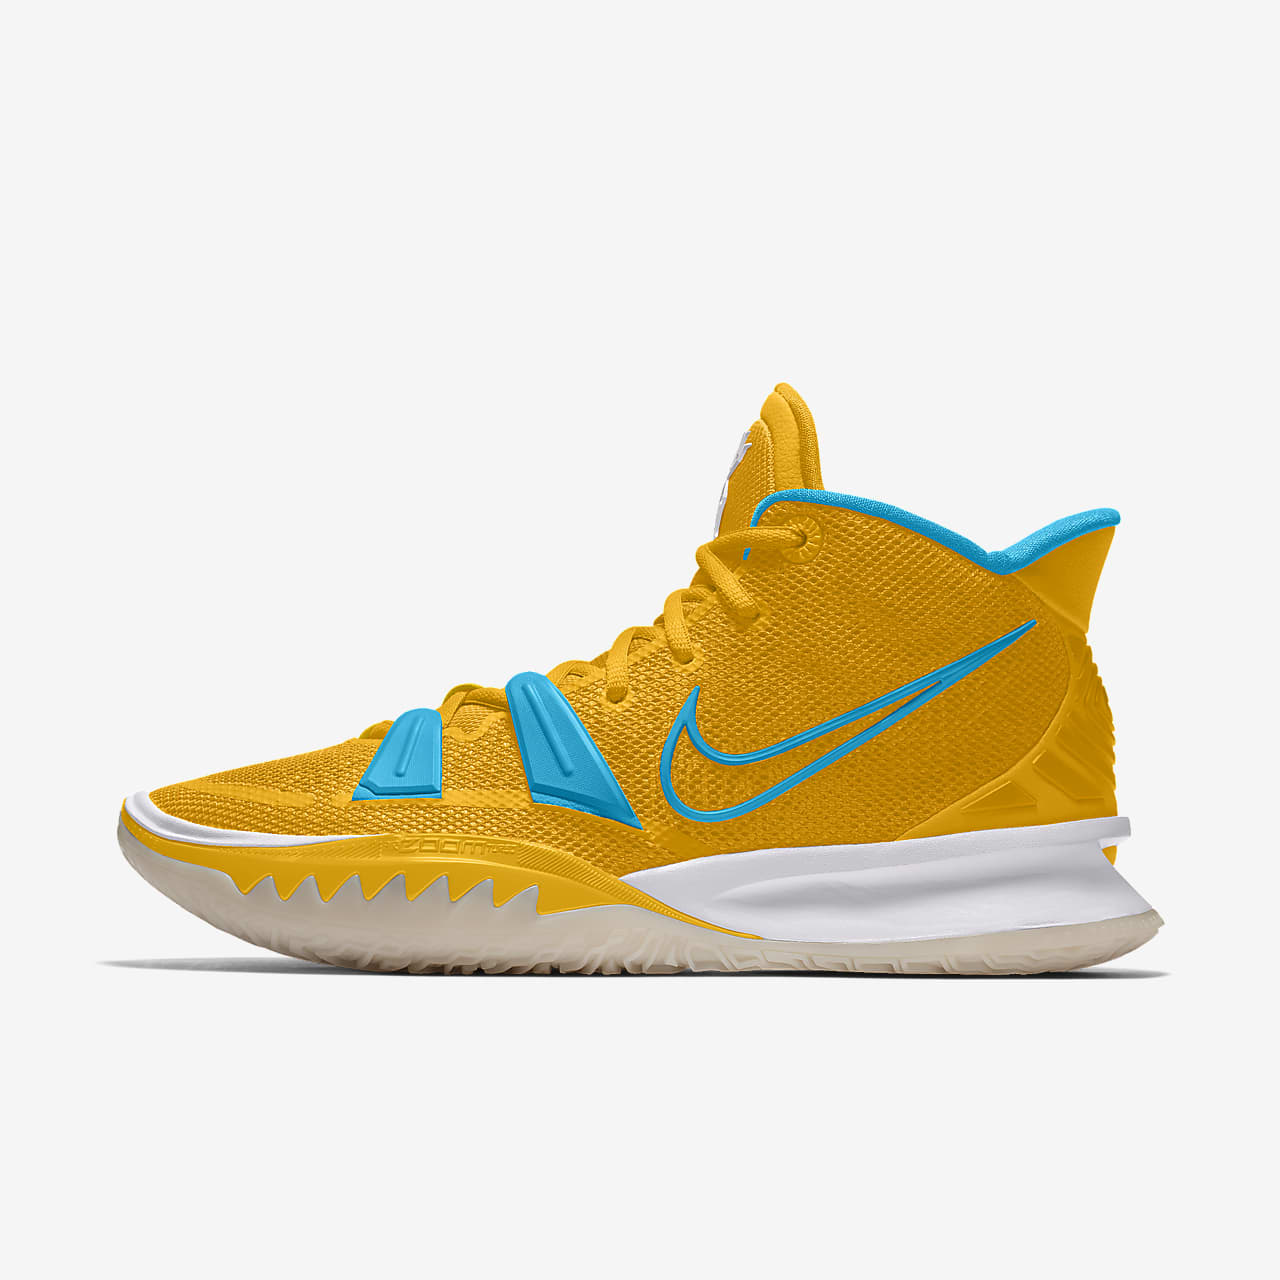 Custom Basketball Shoe. Nike DK